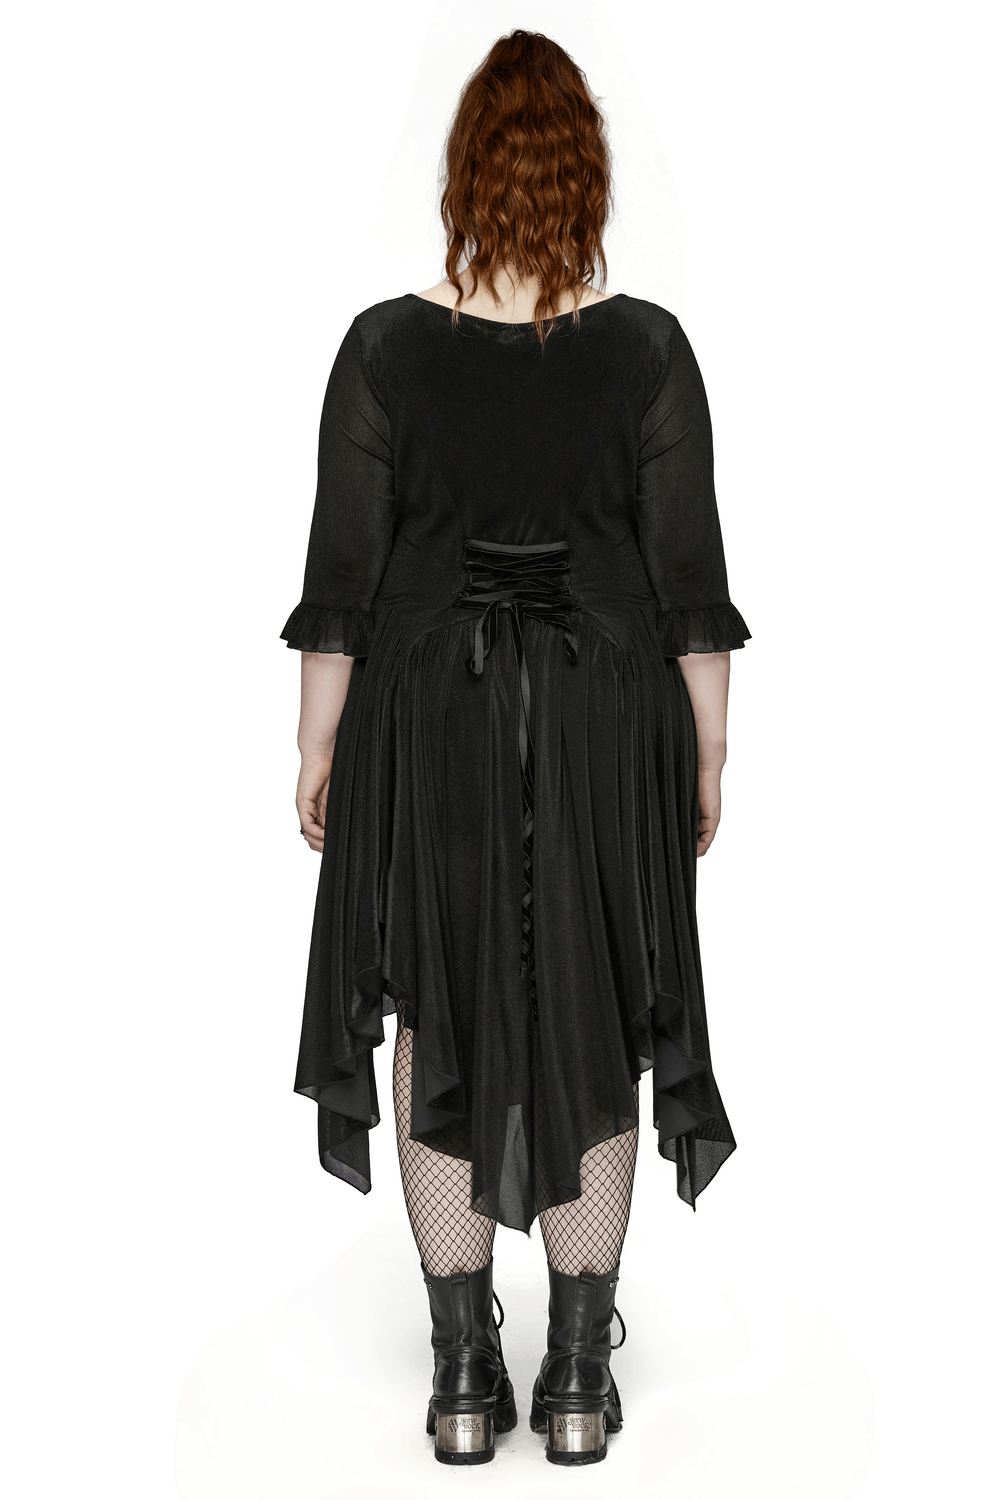 Vestido negro de manga larga asimétrico con cordones en la espalda para mujer